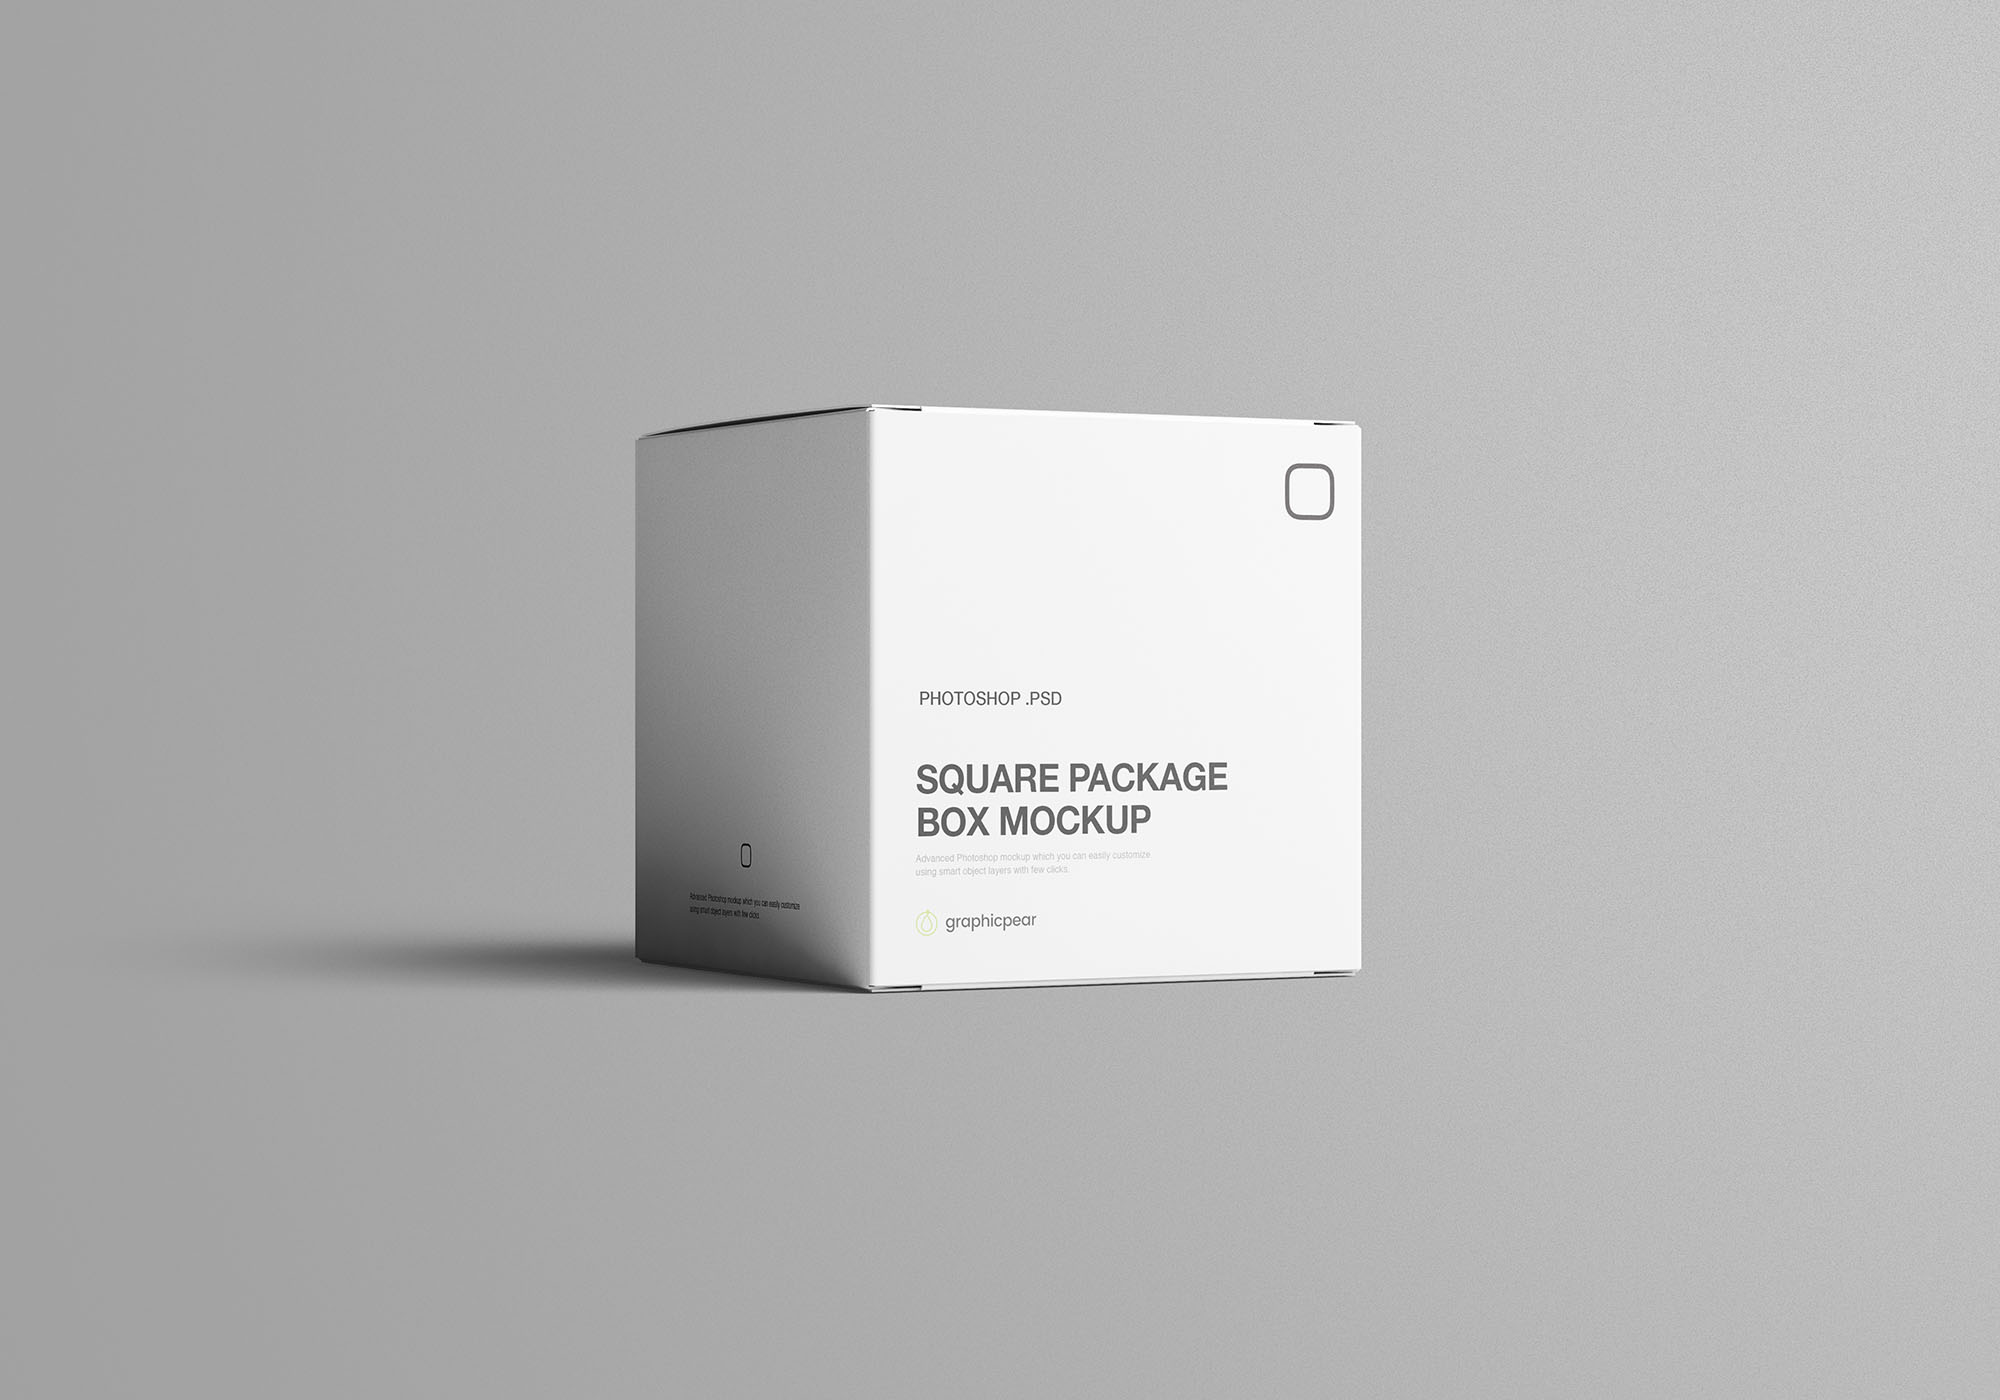 方形包装盒设计效果图样机模板 Square Package Box Mockup插图(6)